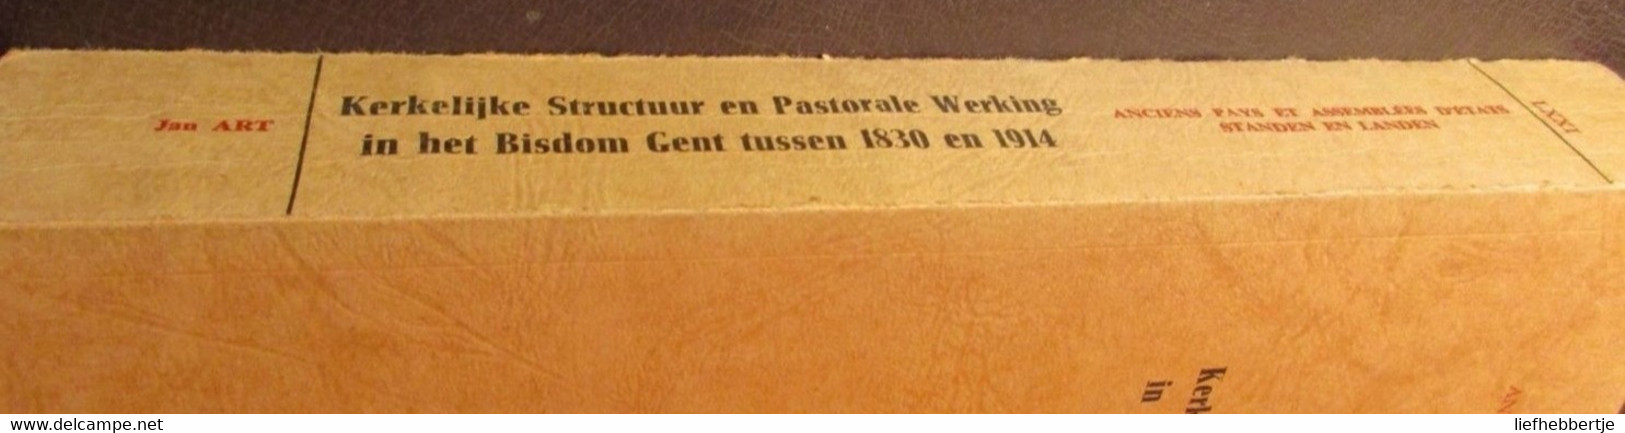 Kerkelijke Structuur En Pastorale Werking In Het Bisdom Gent Tussen 1830 En 1914 - Door Jan Art  Yy - Geschiedenis